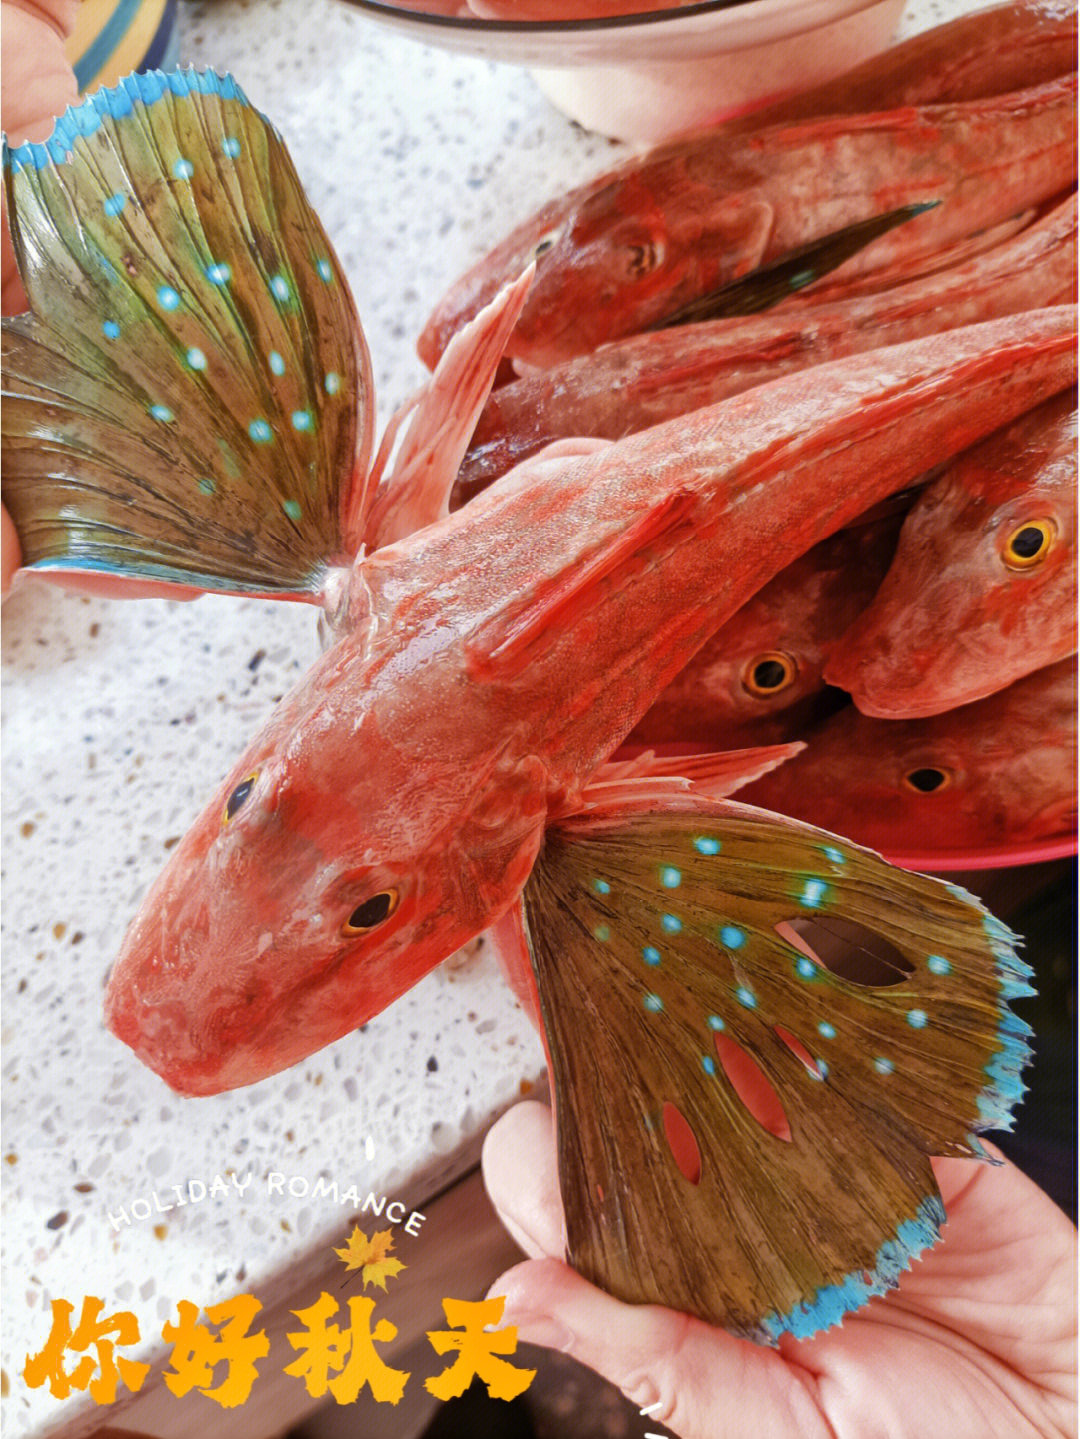 小科普:红头鱼,学名短鳍红娘鱼,属于冷水洄游海鱼